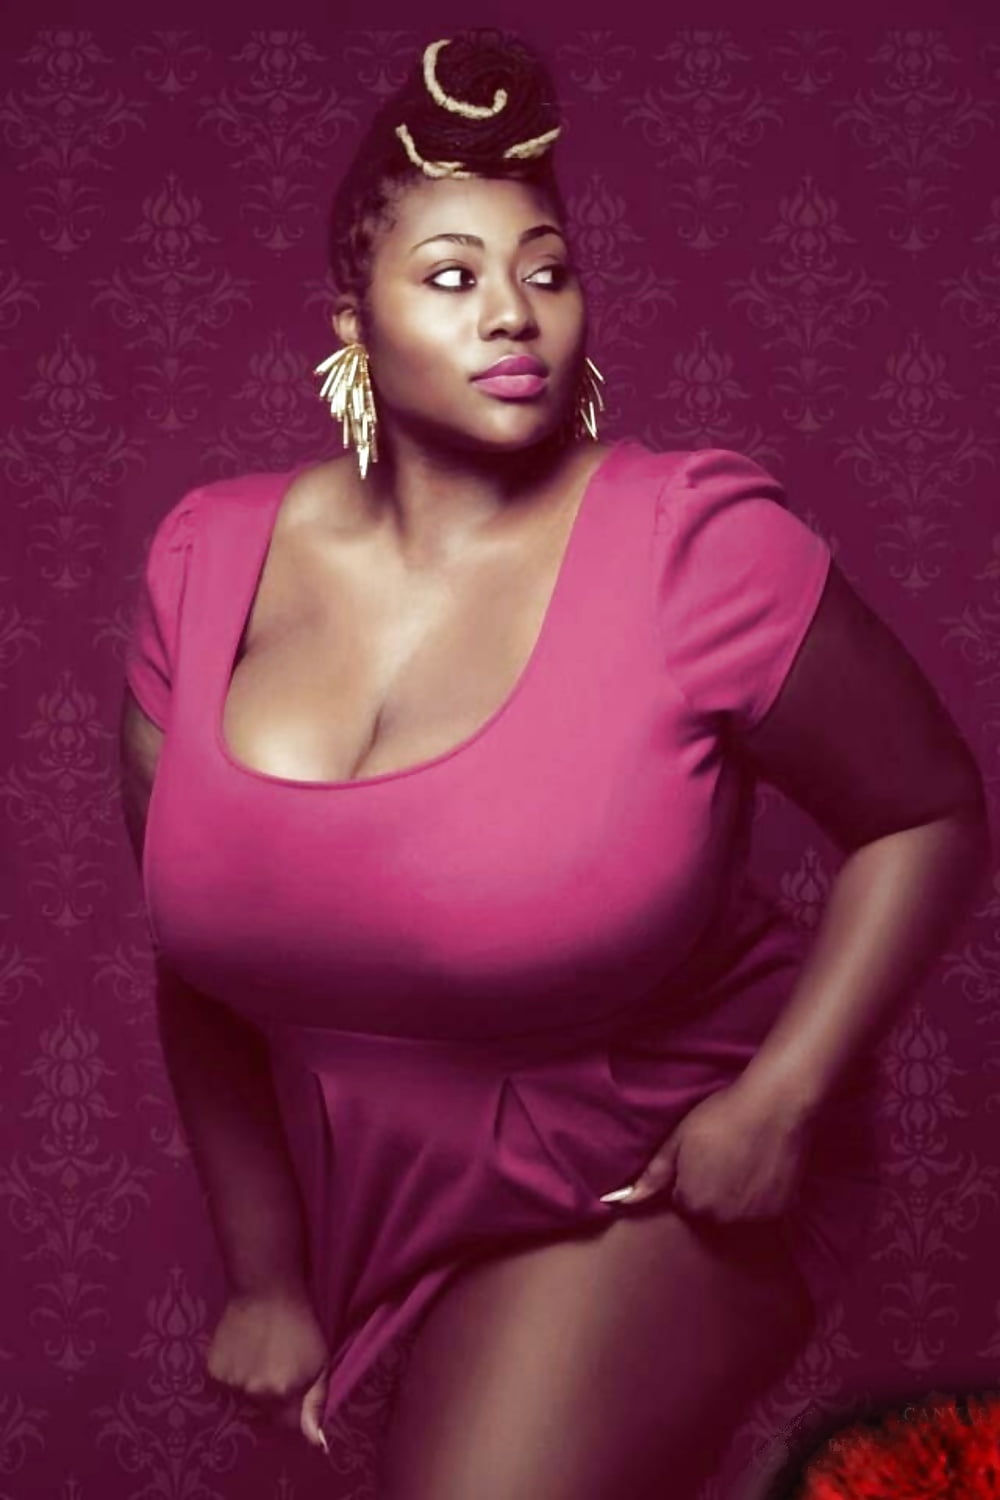 негритянка с пышной грудью фото 75